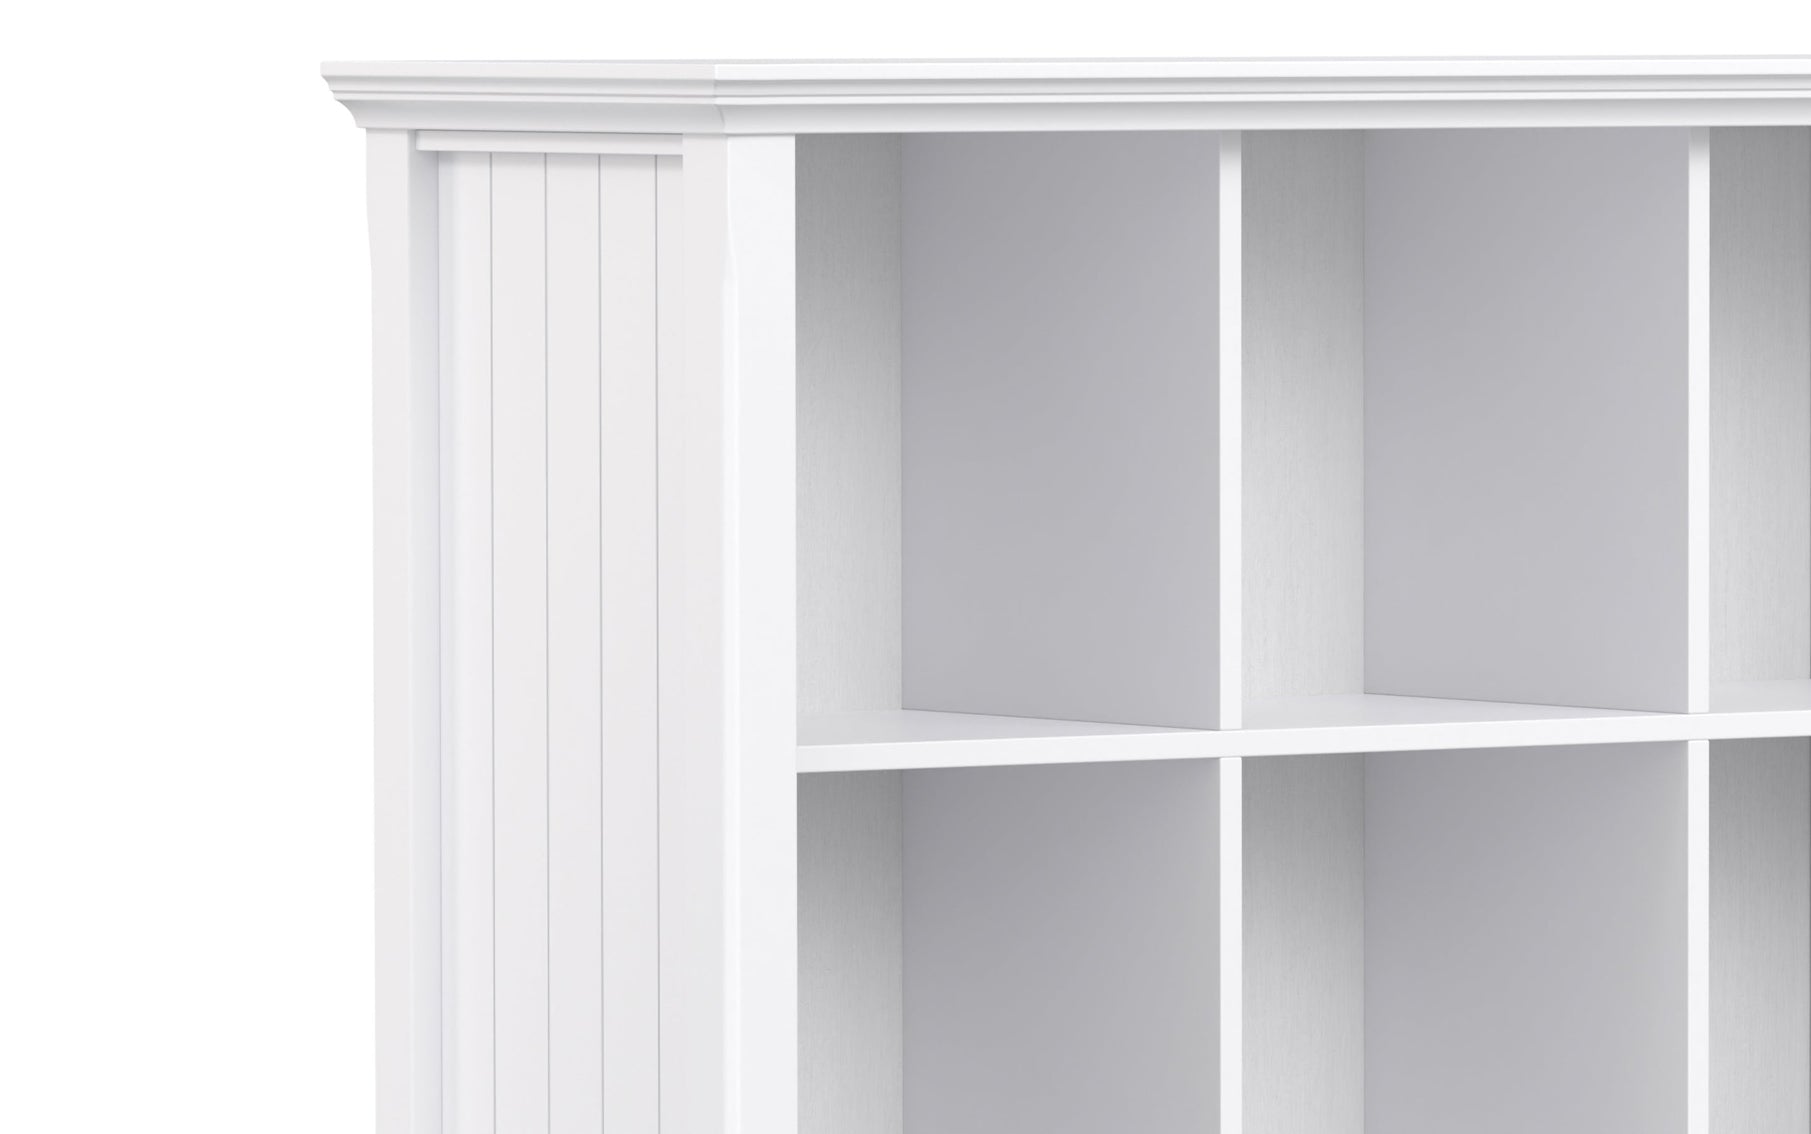 White | Acadian Nine Cube Bookcase & Storage Unit